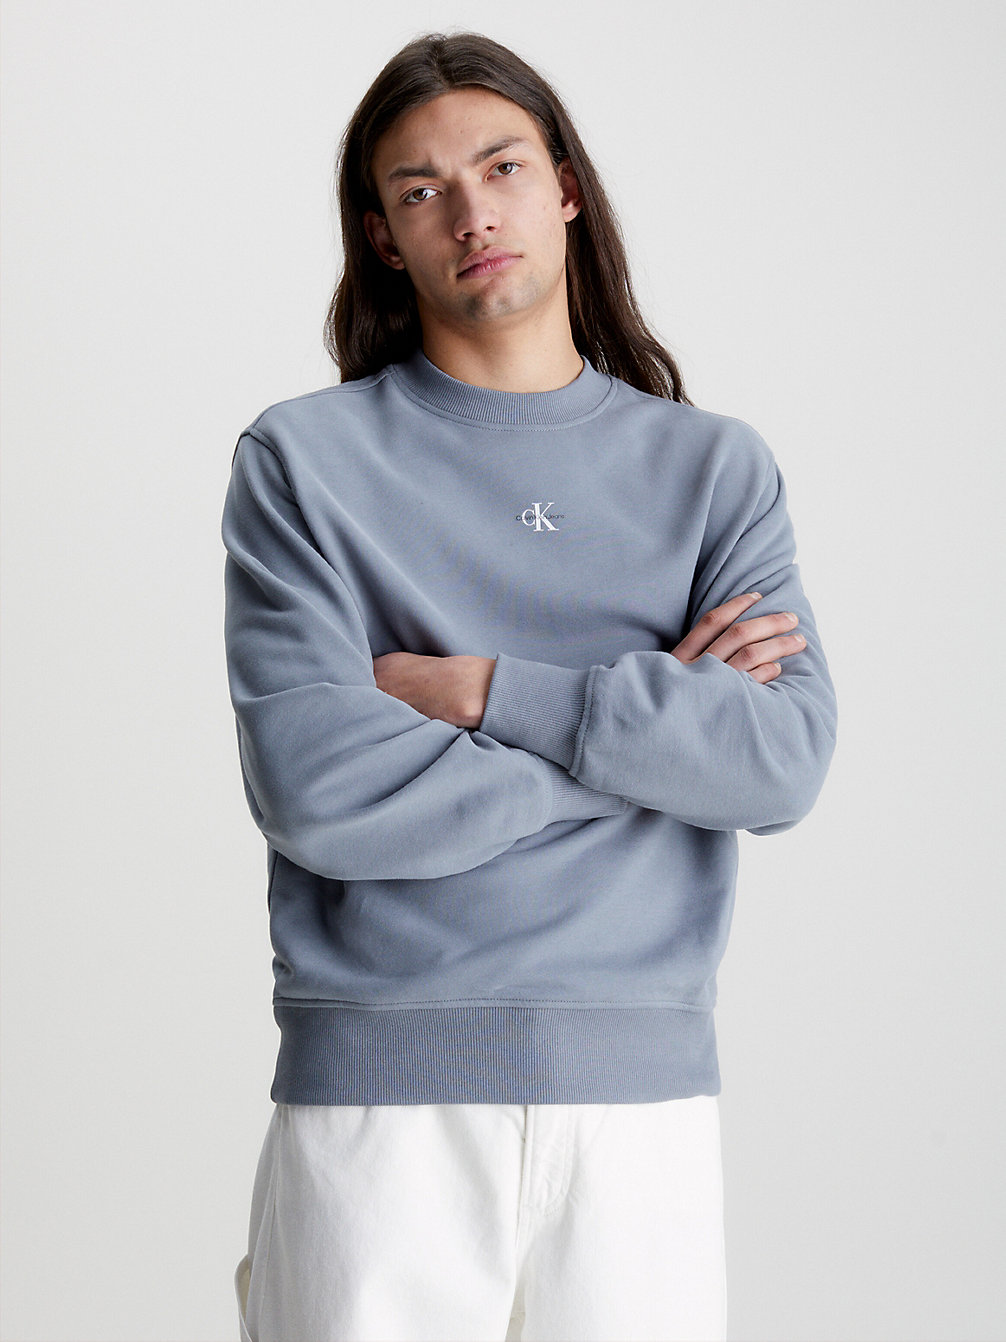 OVERCAST GREY > Relaxed Sweatshirt Met Monogram > undefined heren - Calvin Klein